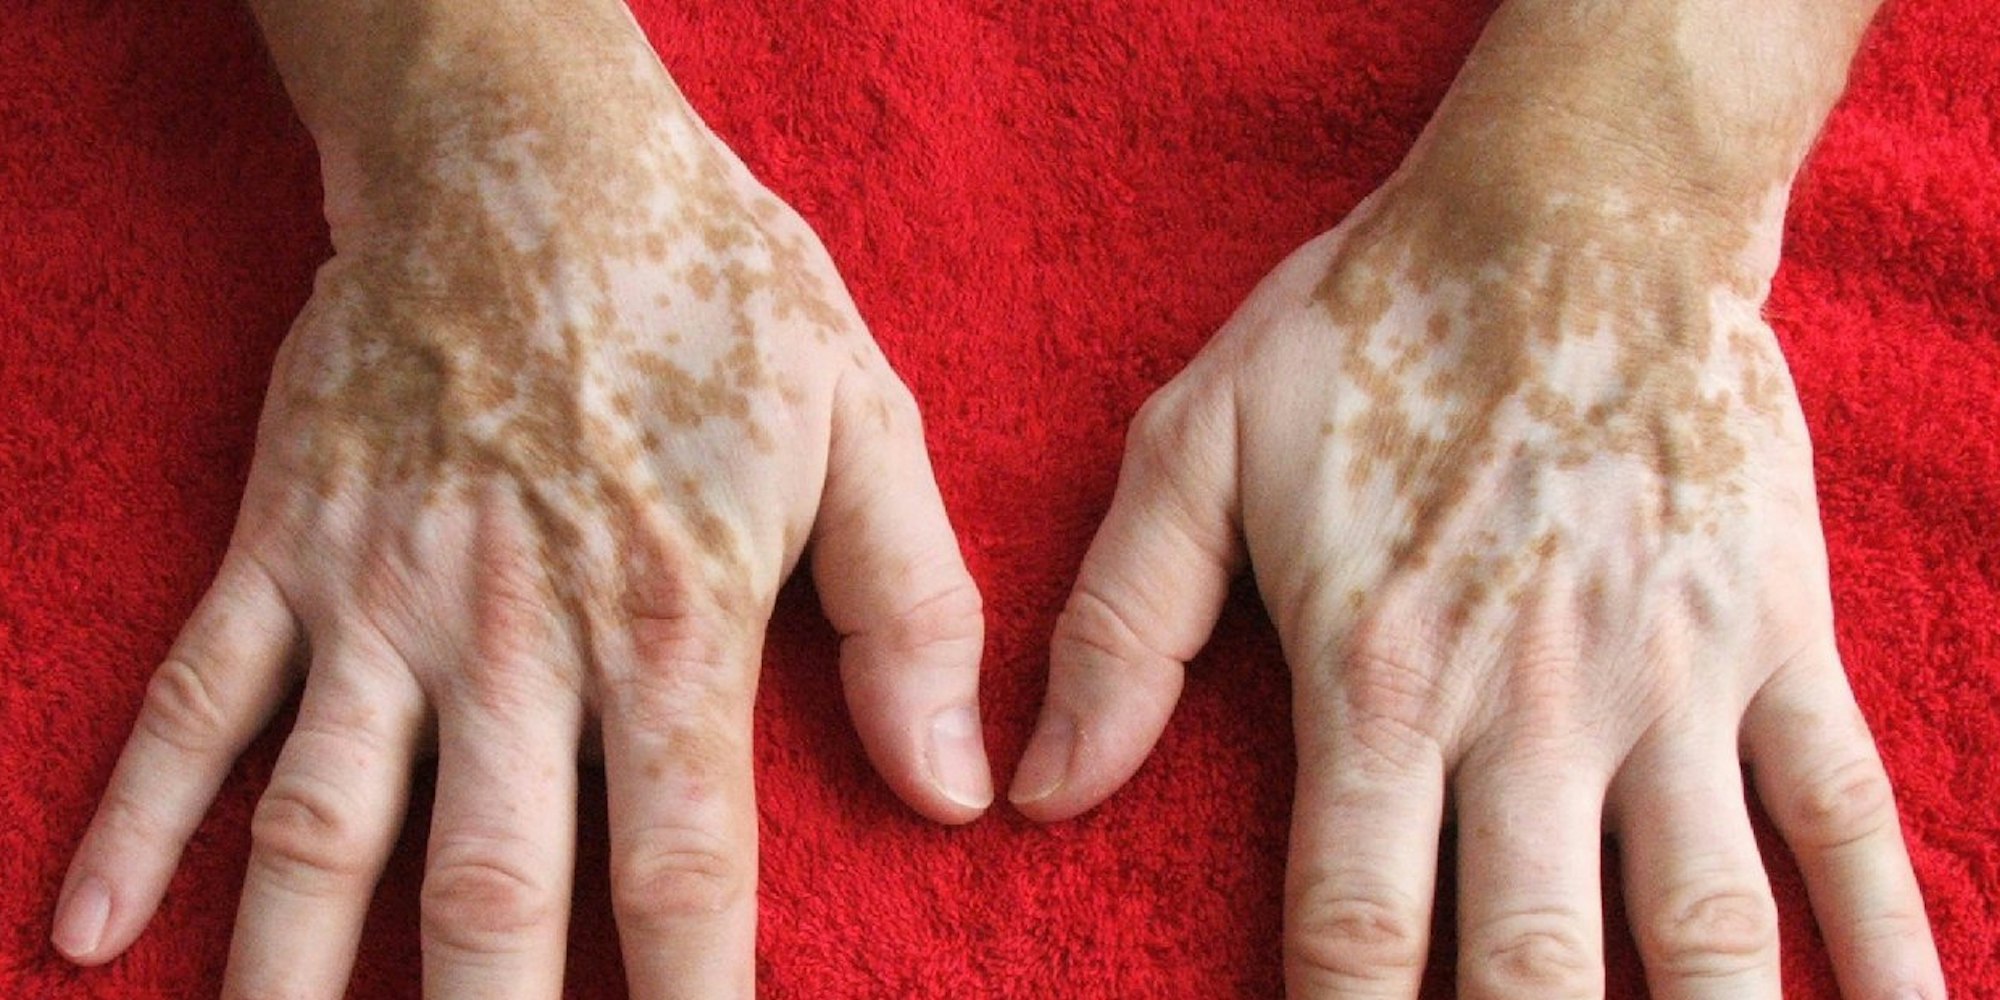 Weiße Flecken sind die einzigen Anzeichen von Vitiligo - andere Symptome gibt es nicht.